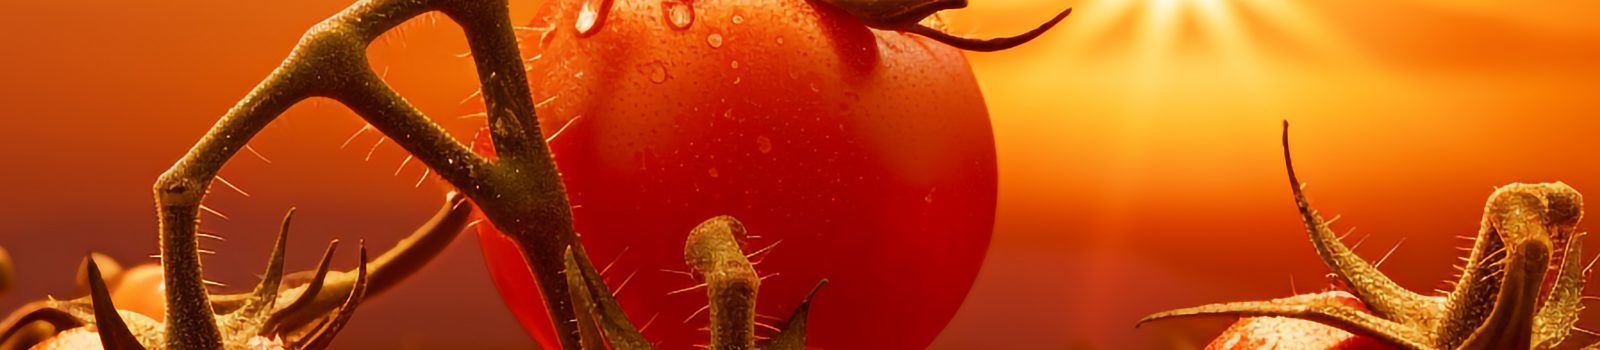 Tomatoes ann an solas an fheasgair VIII